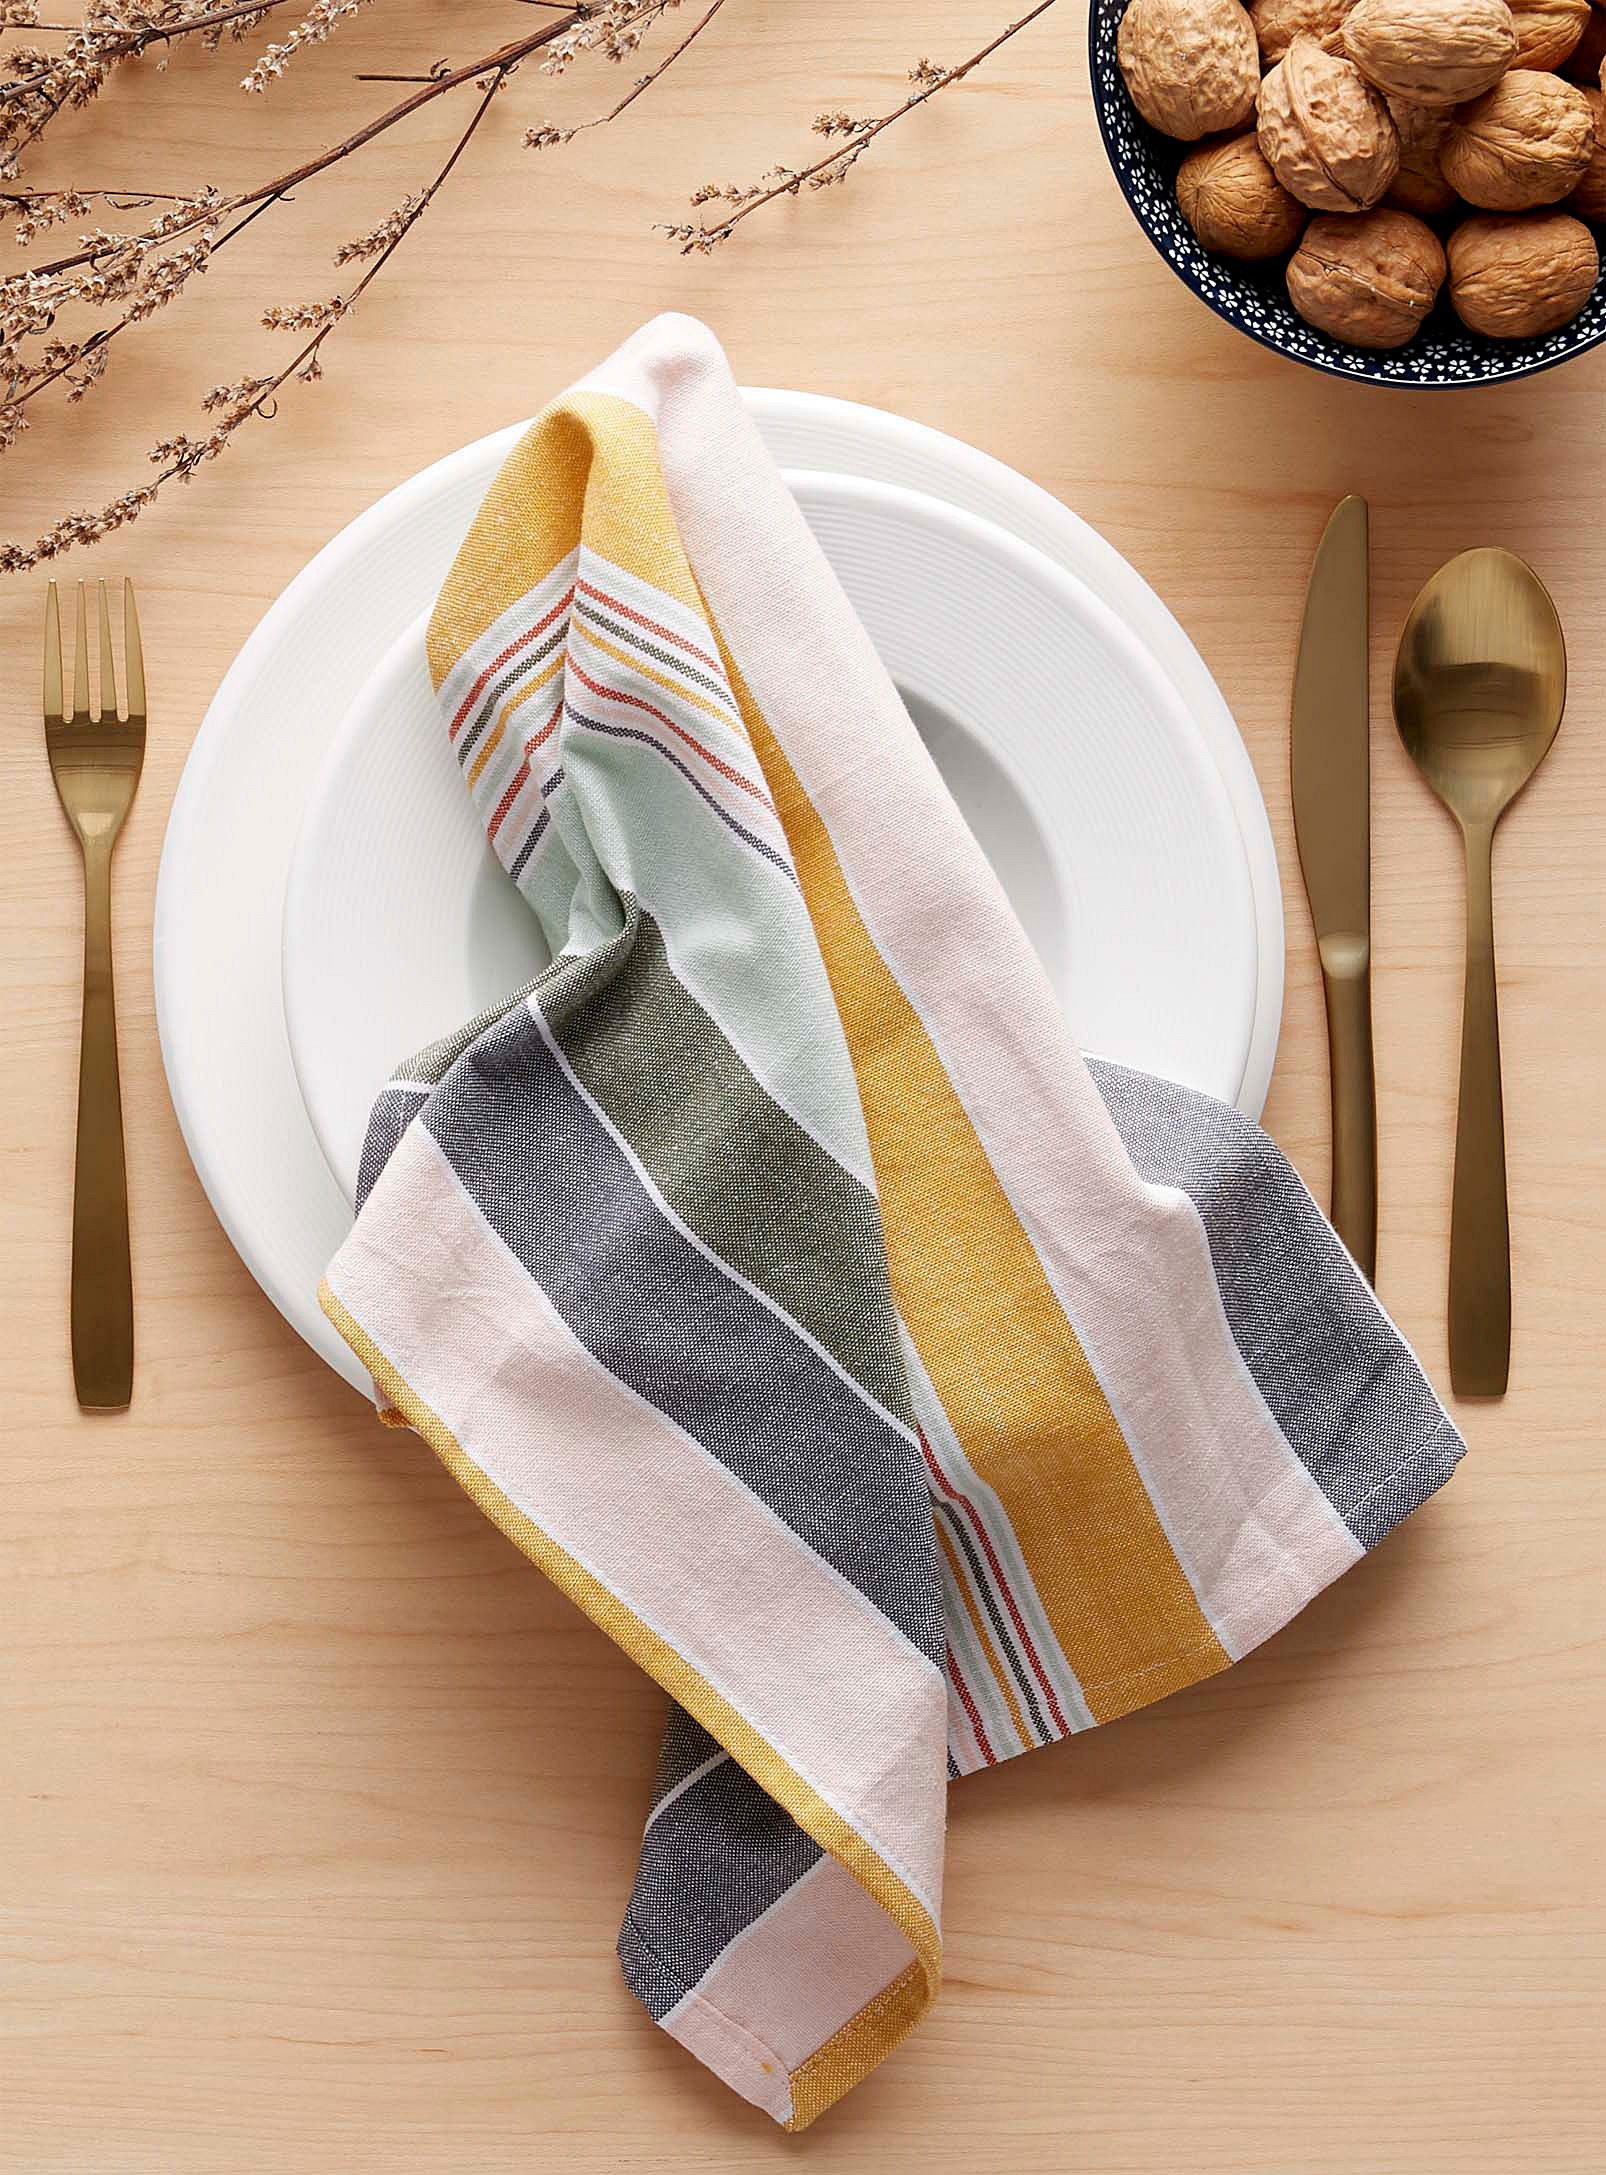 Swedish dish cloth